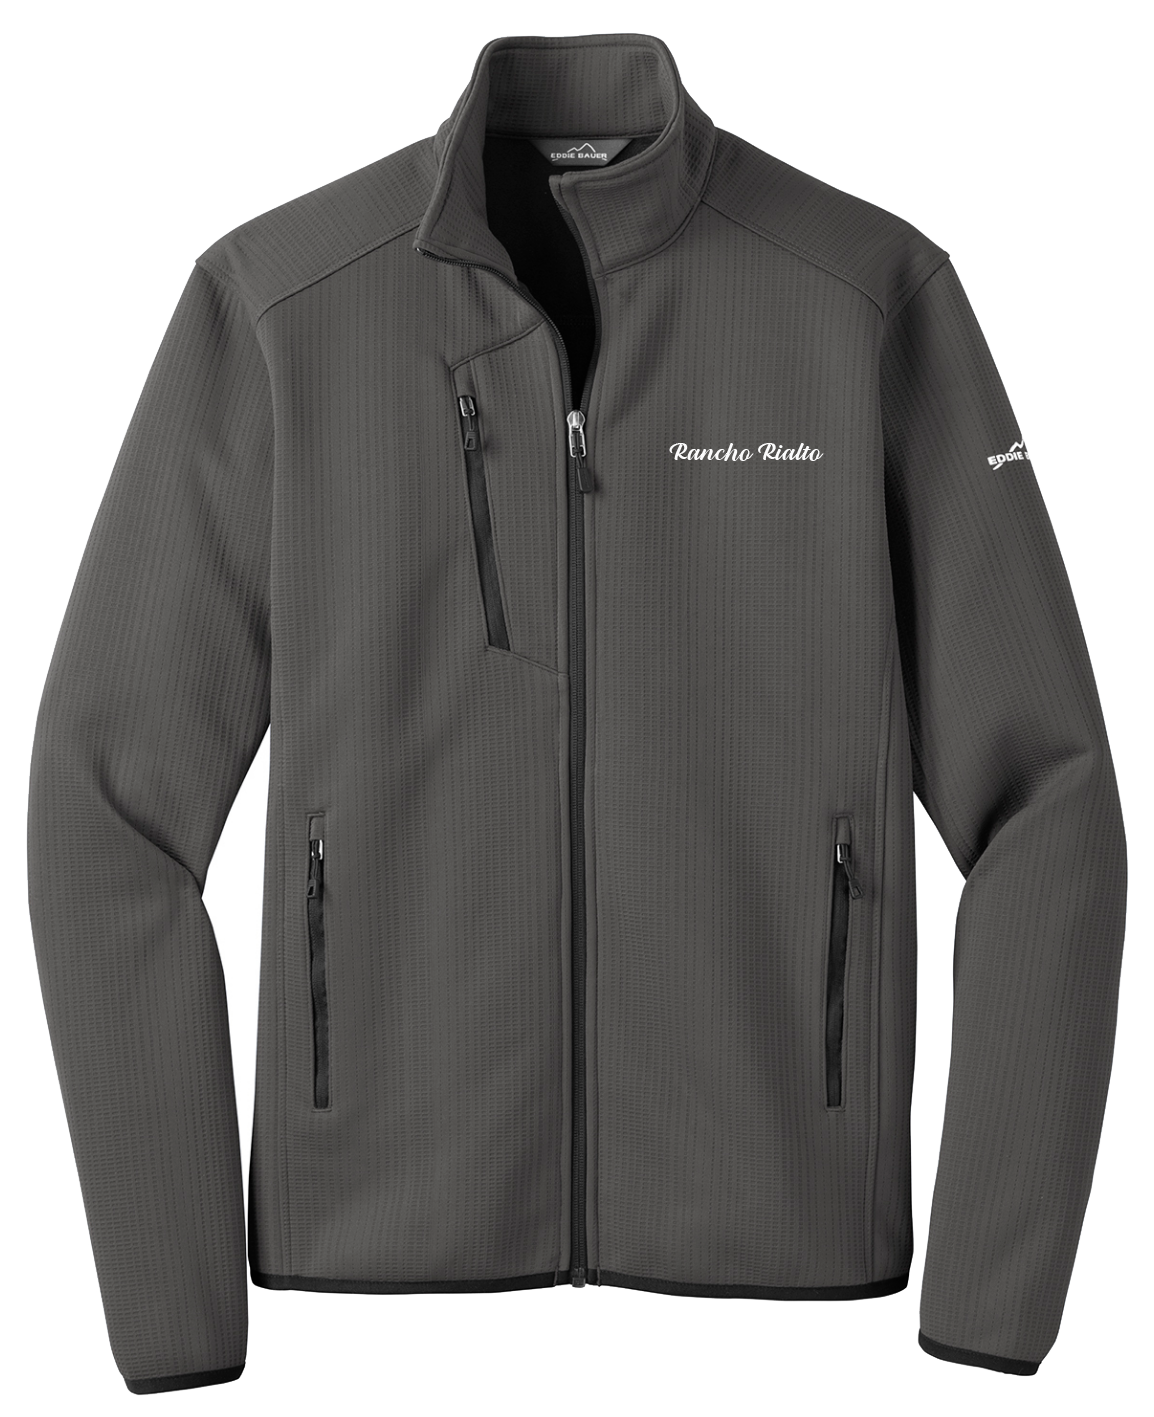 Rancho Rialto - Mens - Eddie Bauer ® Dash Full-Zip Fleece Jacket